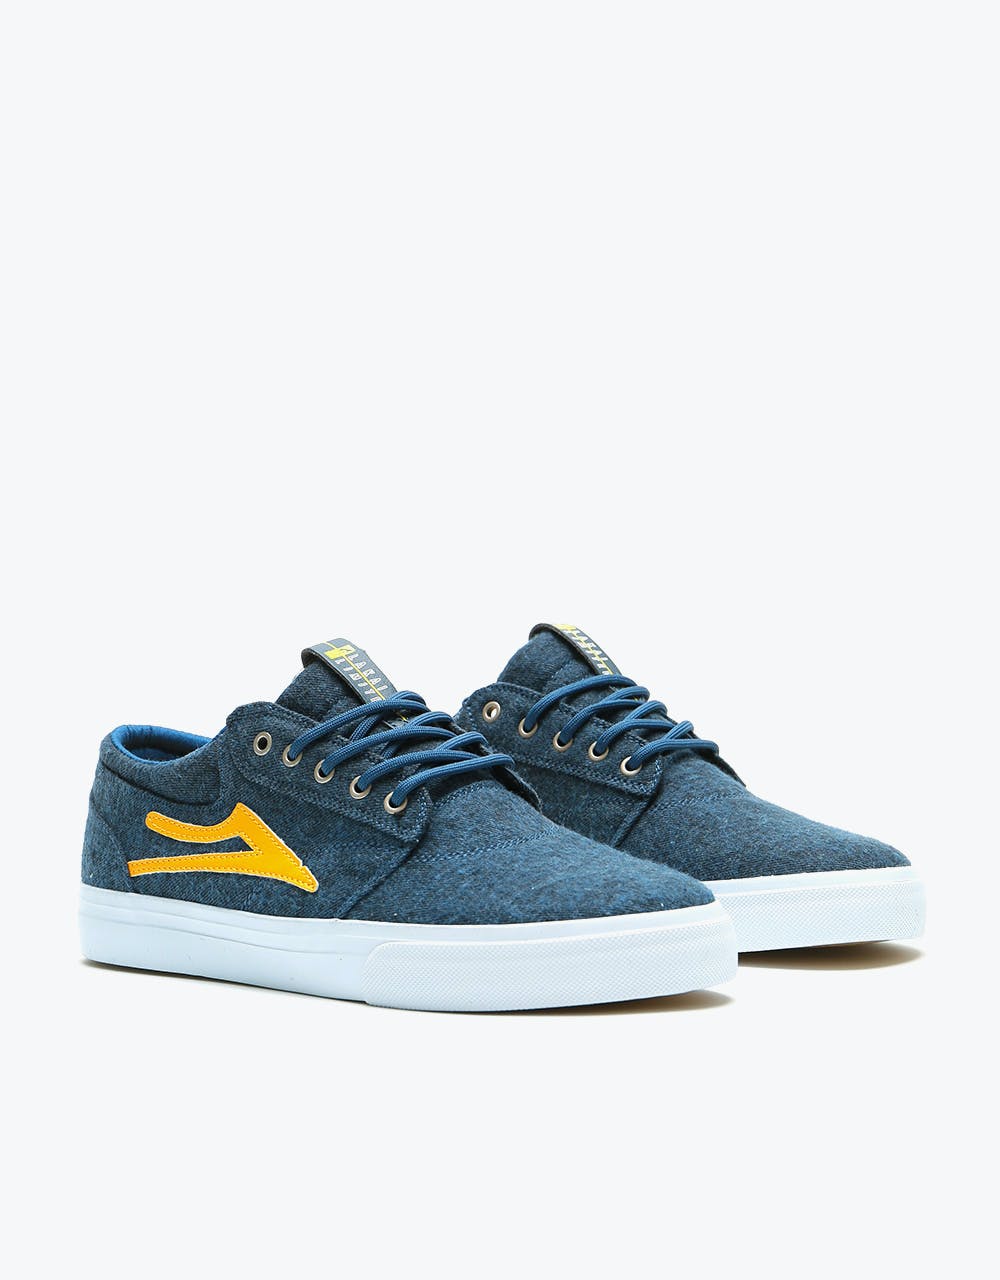 Lakai Griffin Textile Skate Shoes - Navy Textile